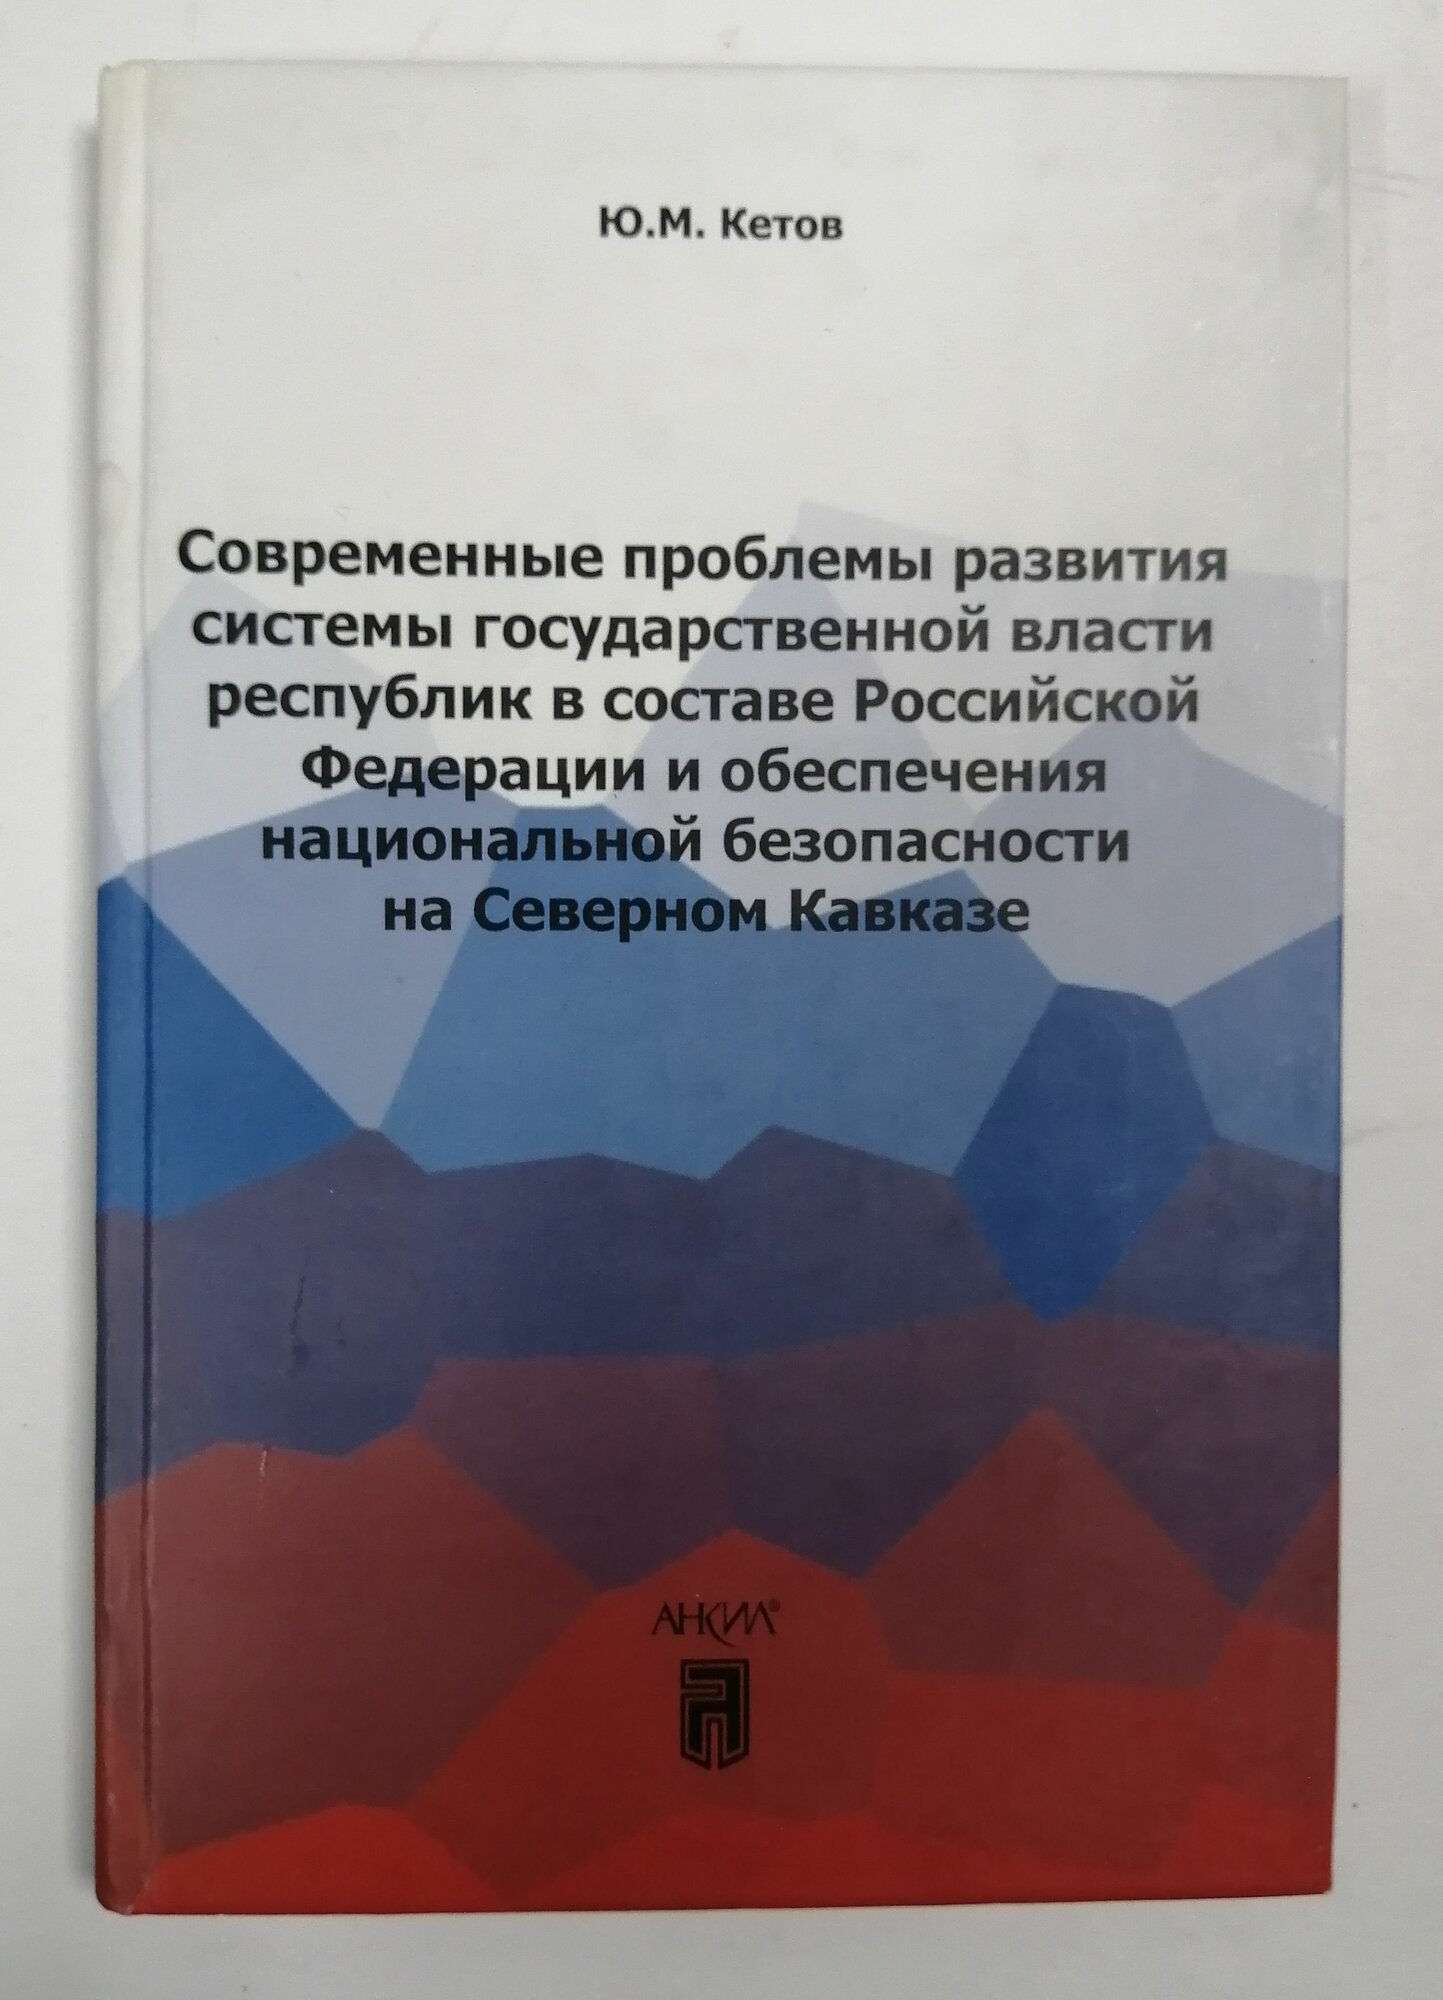 Современные проблемы развития системы государственной власти республик в составе Российской Федерации и обеспечения национальной безопасности на Северном Кавказе